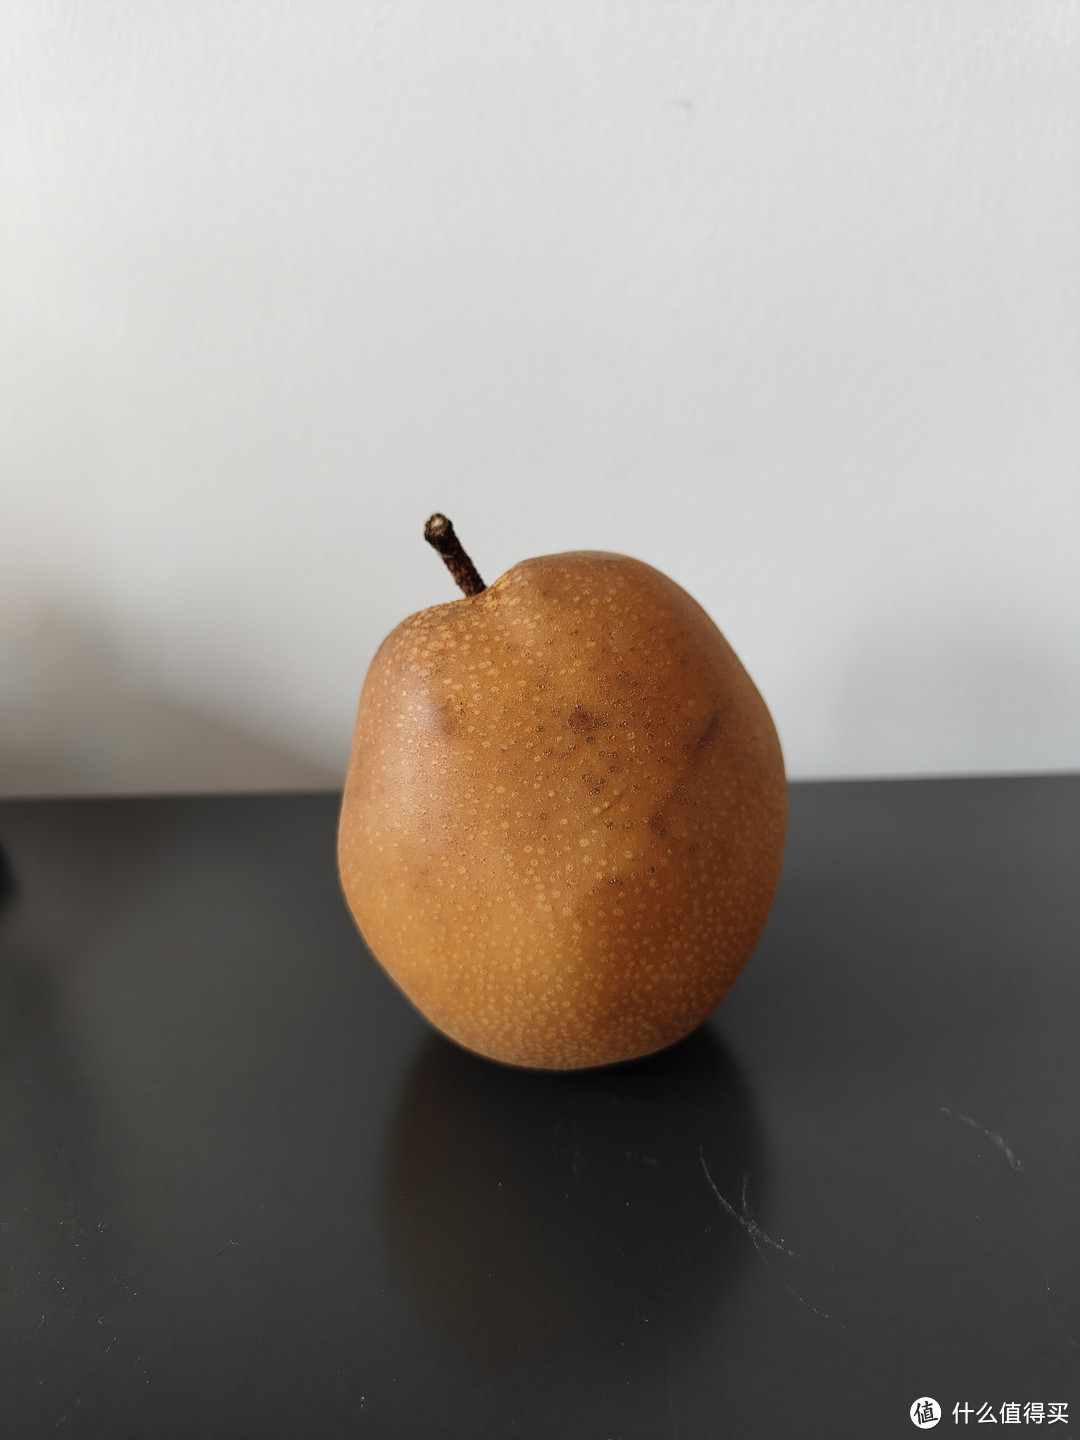 一箱命运多舛的梨，这种状态下的梨还能吃吗？